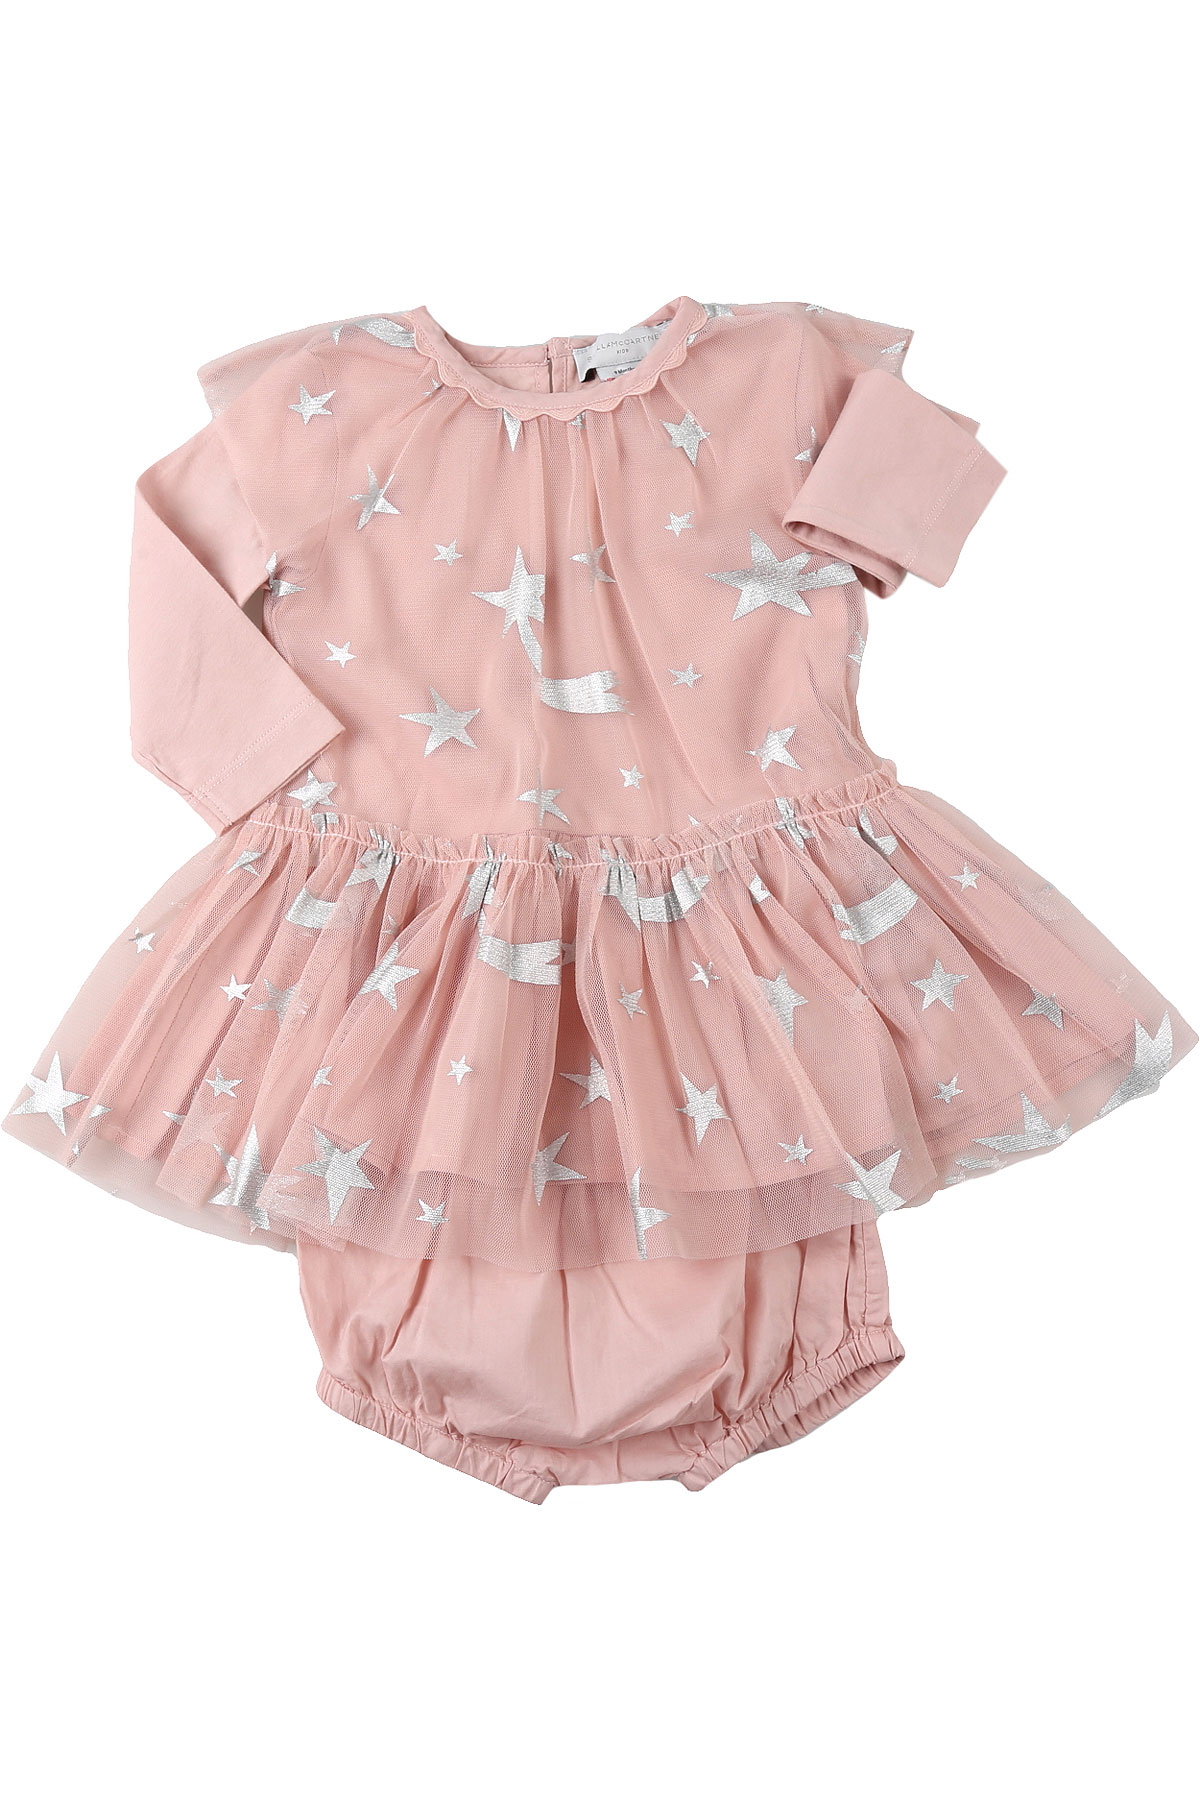 Stella McCartney Baby Kleid für Mädchen Günstig im Sale, Pink, Polyester, 2017, 12M 18M 2Y 3Y 9M